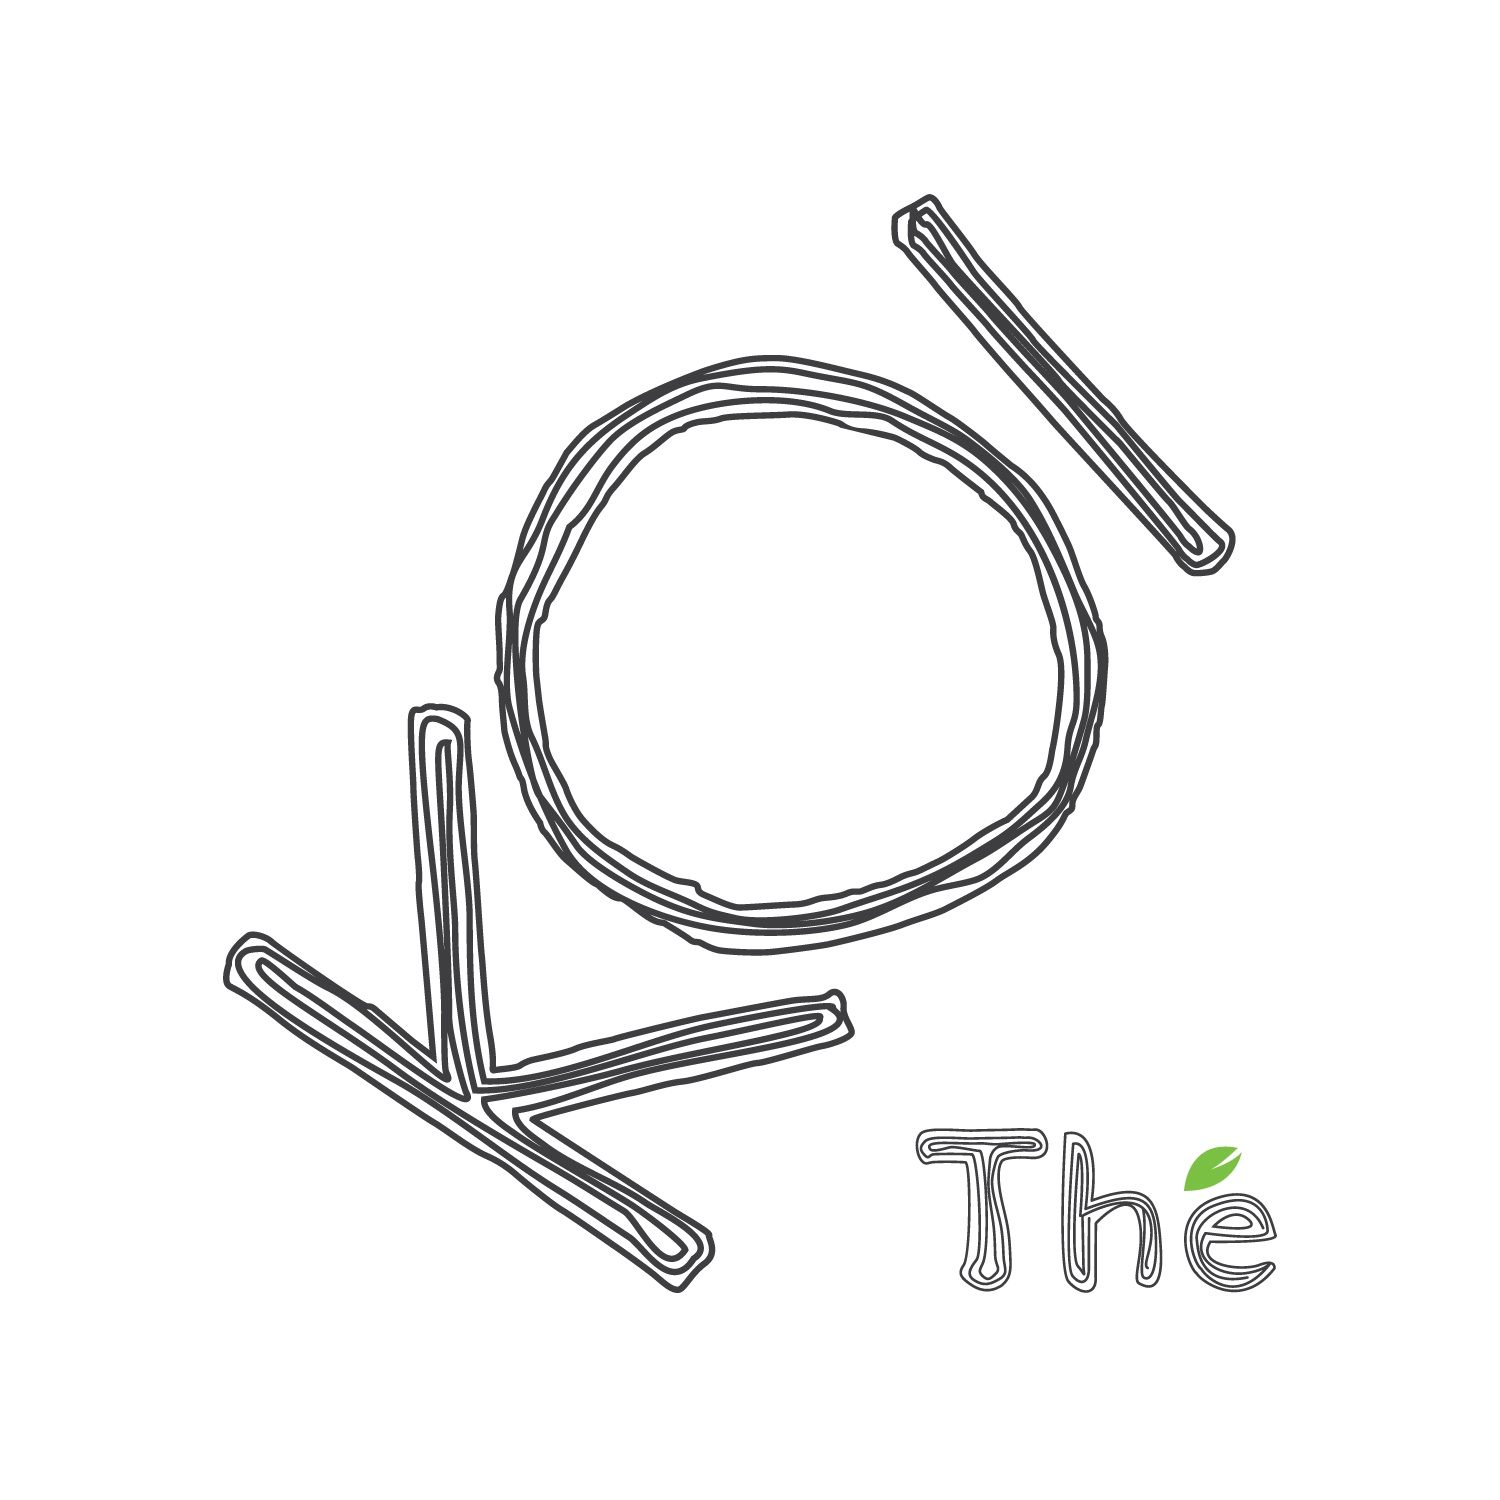 KOI Logo